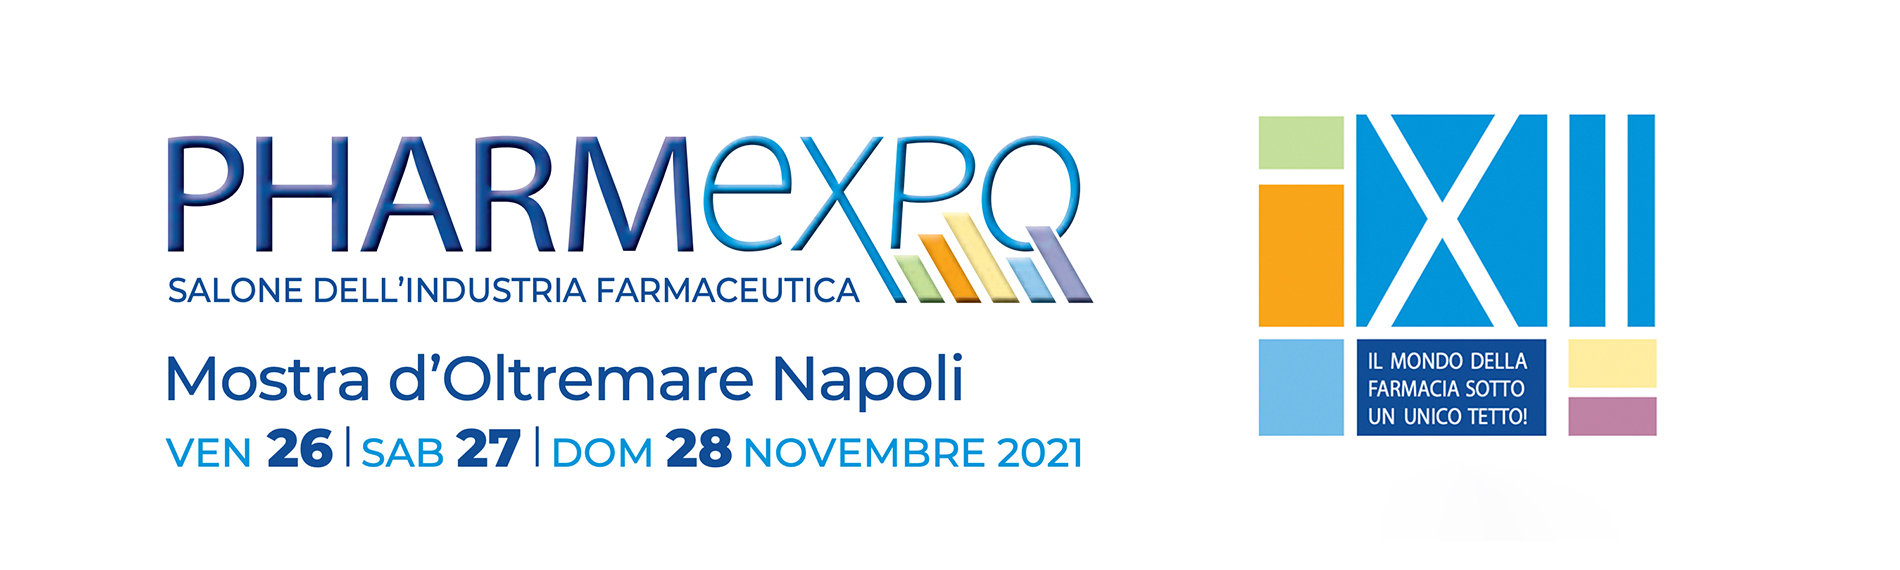 Pharmexpo. Mostra d’Oltremare in Naples, 26-28 November 2021